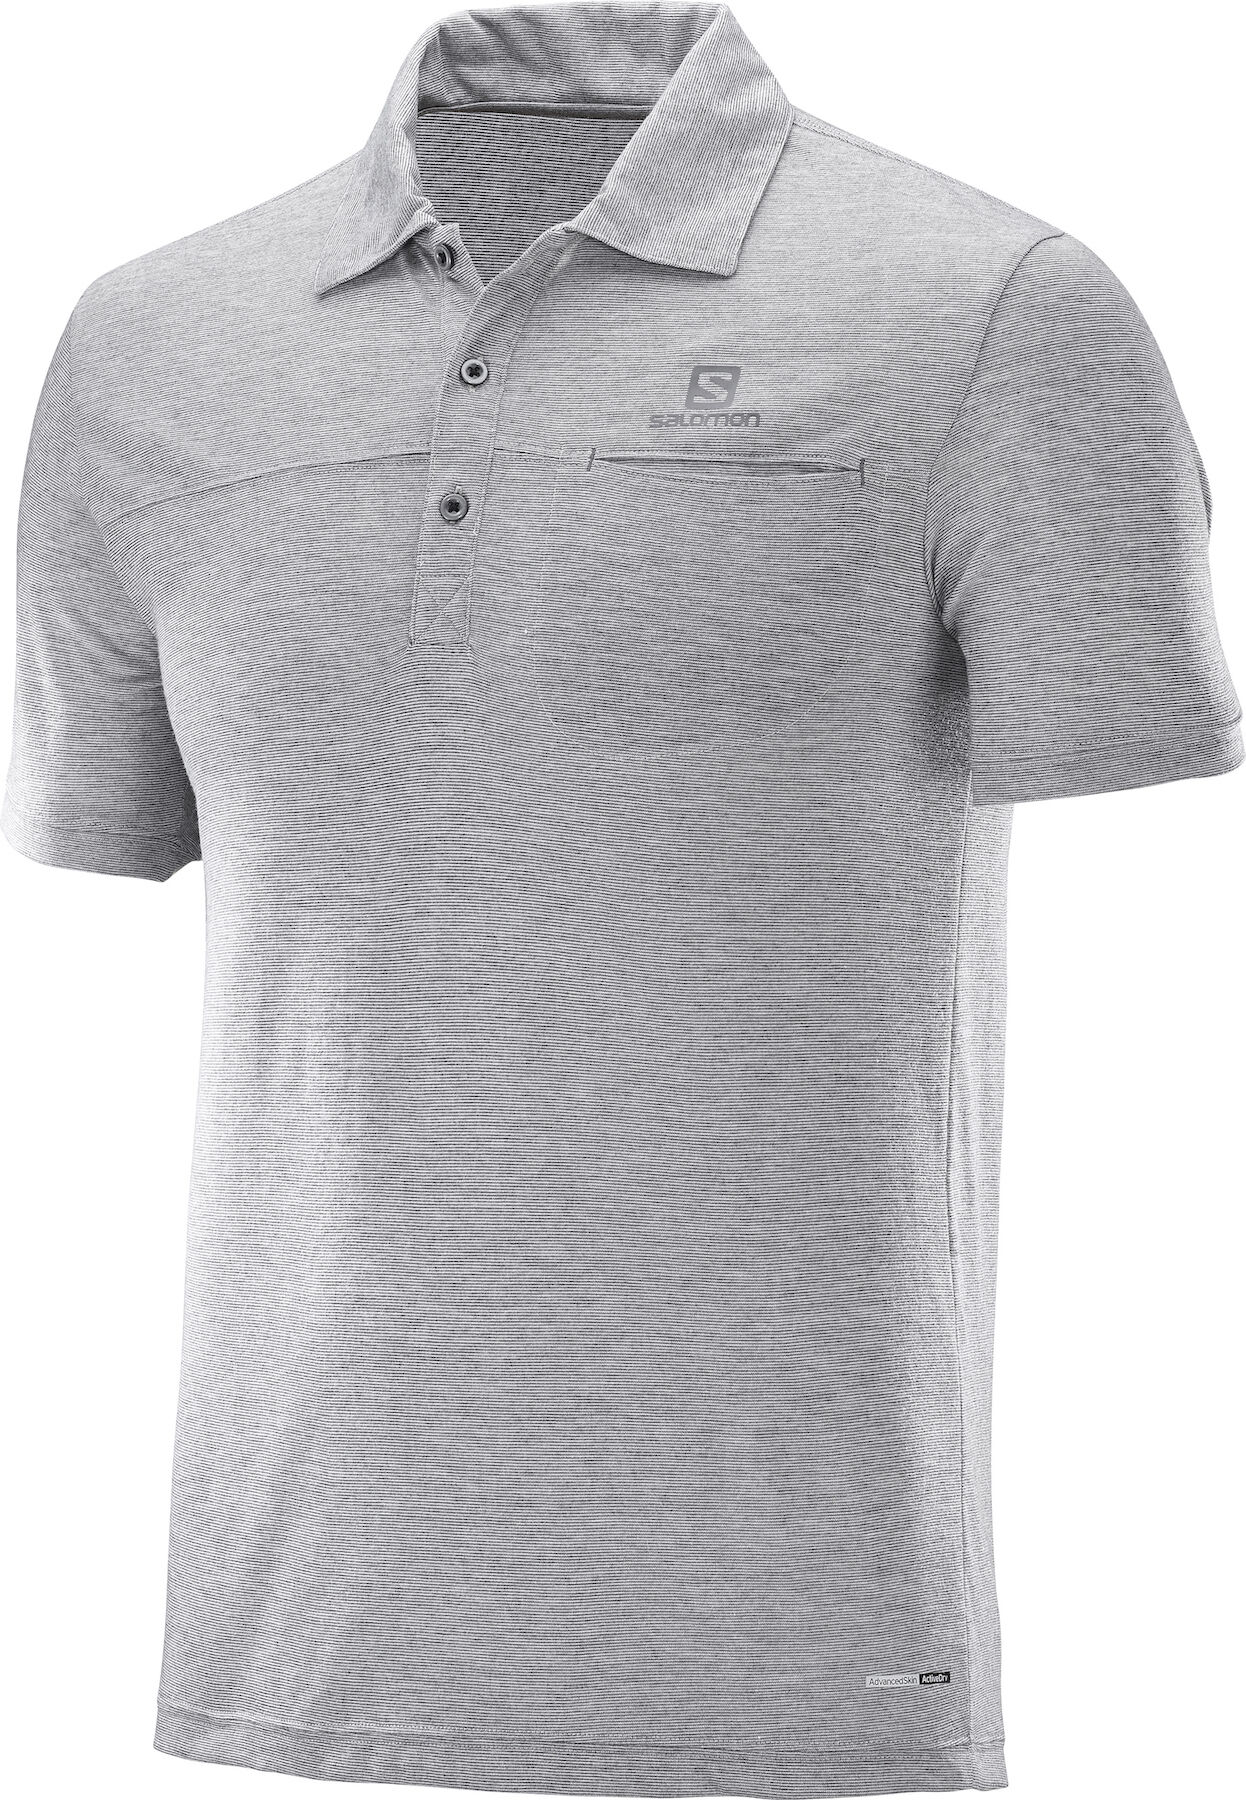 Salomon - Explore - Polo shirt - Men's